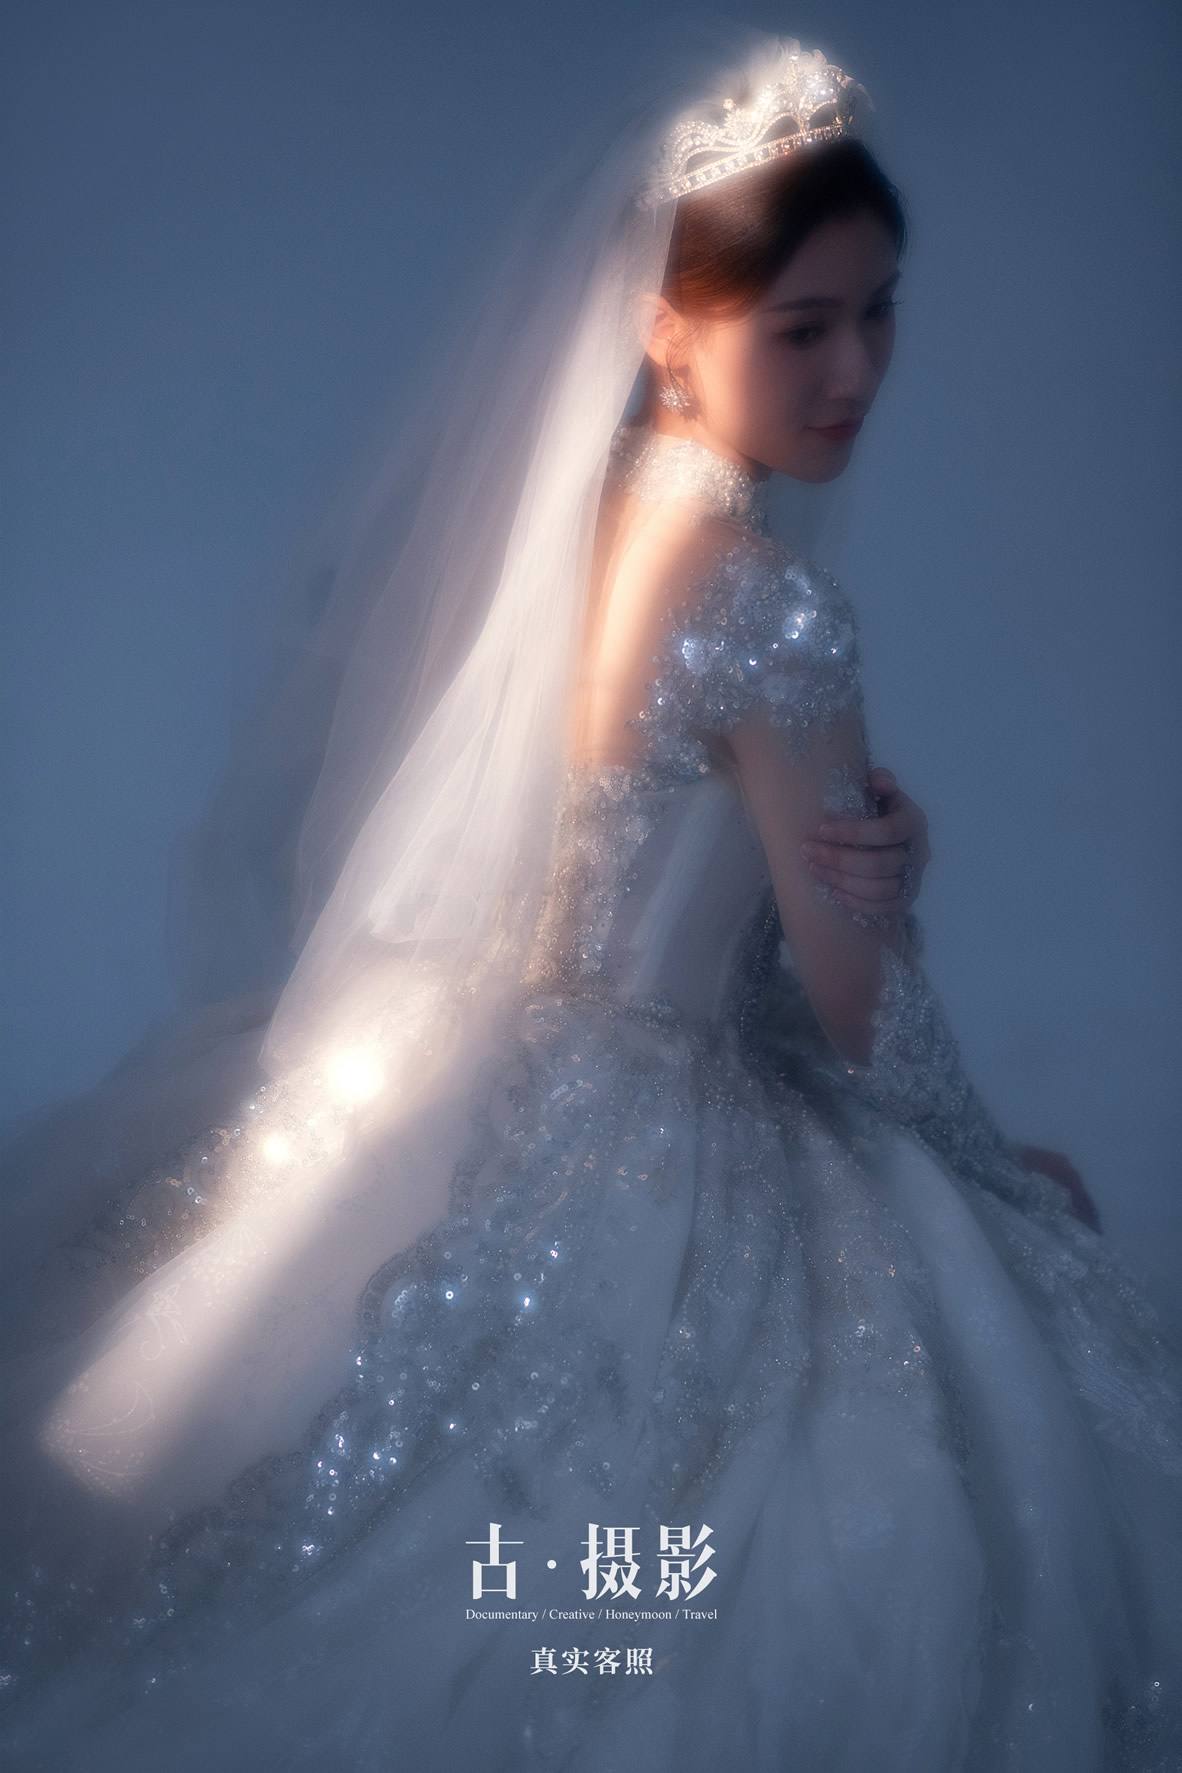 霍先生 林小姐 - 每日客照 - 广州婚纱摄影-广州古摄影官网